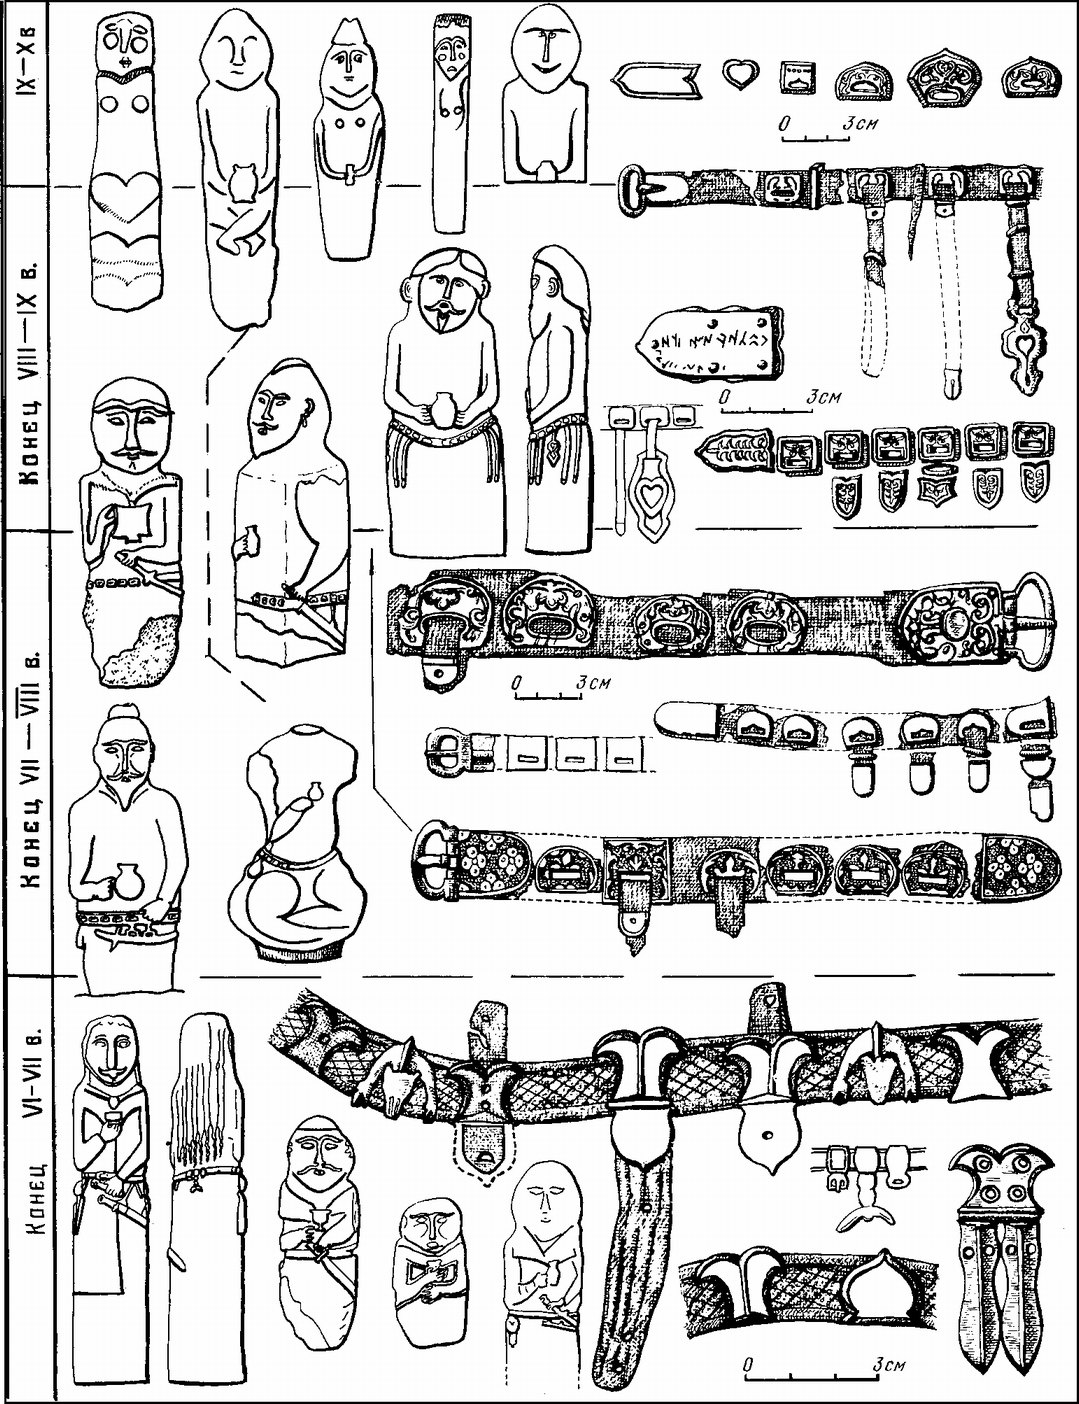 Каменные изваяния и поясные наборы тюрков VI—X вв. (Степи Евразии. С. 128)